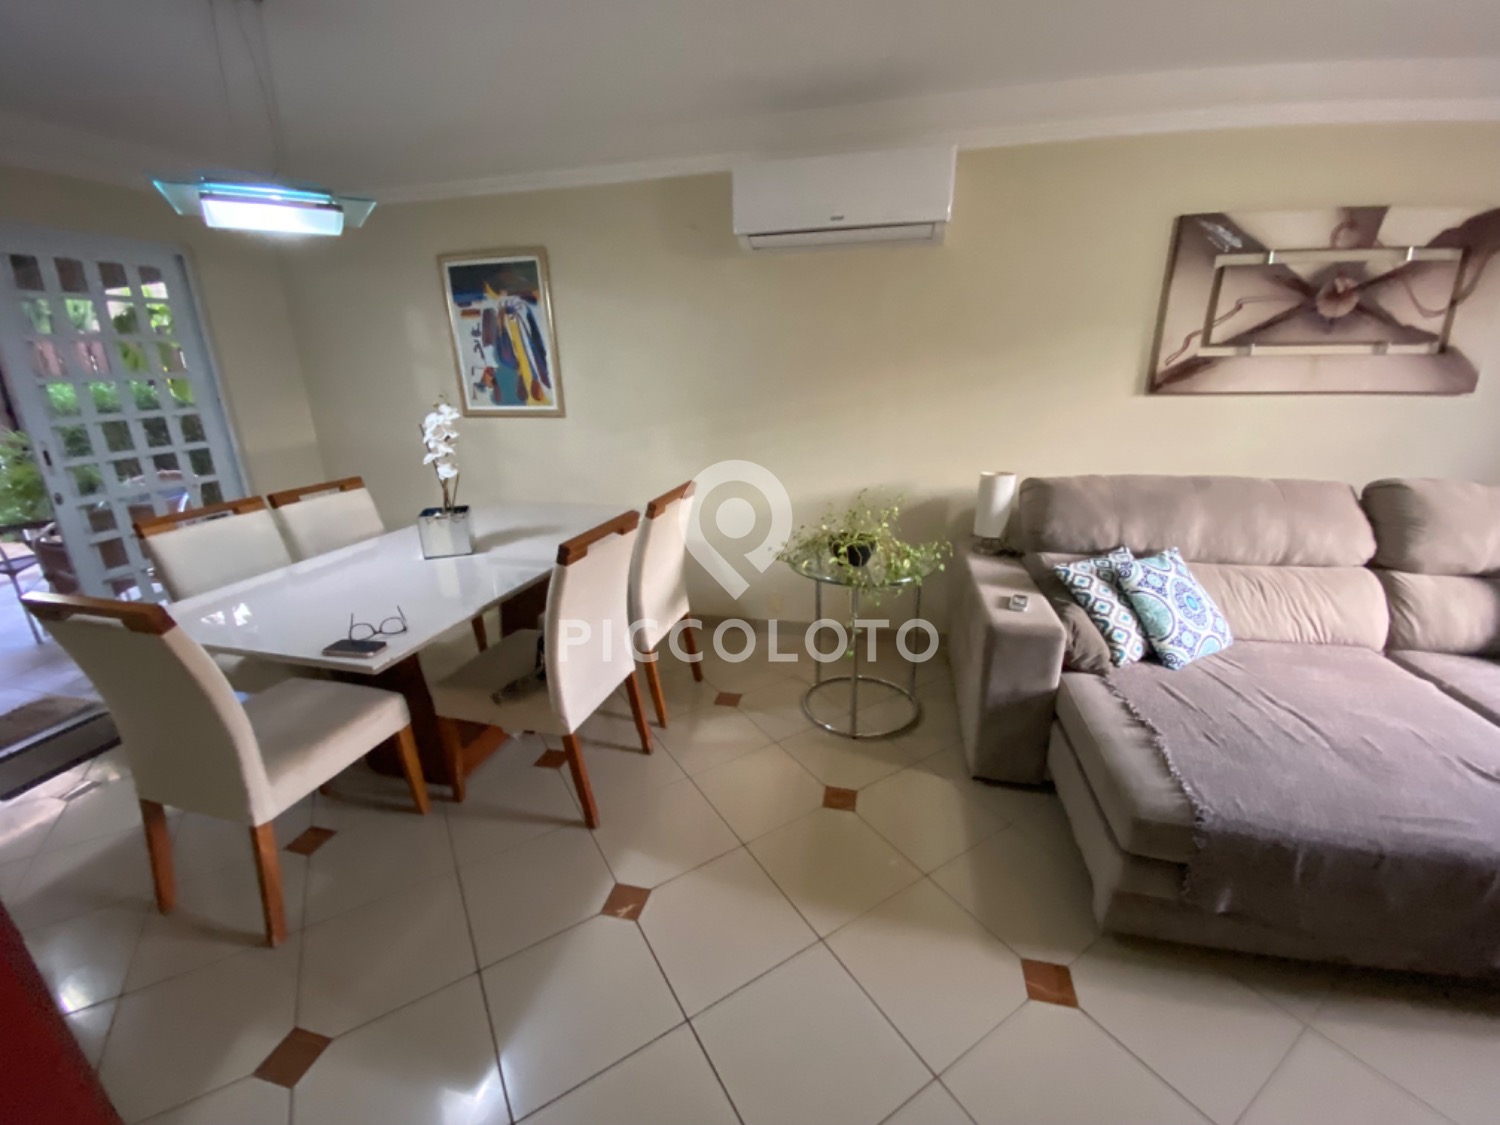 Piccoloto -Casa à venda no Loteamento Residencial Vila Bella em Campinas